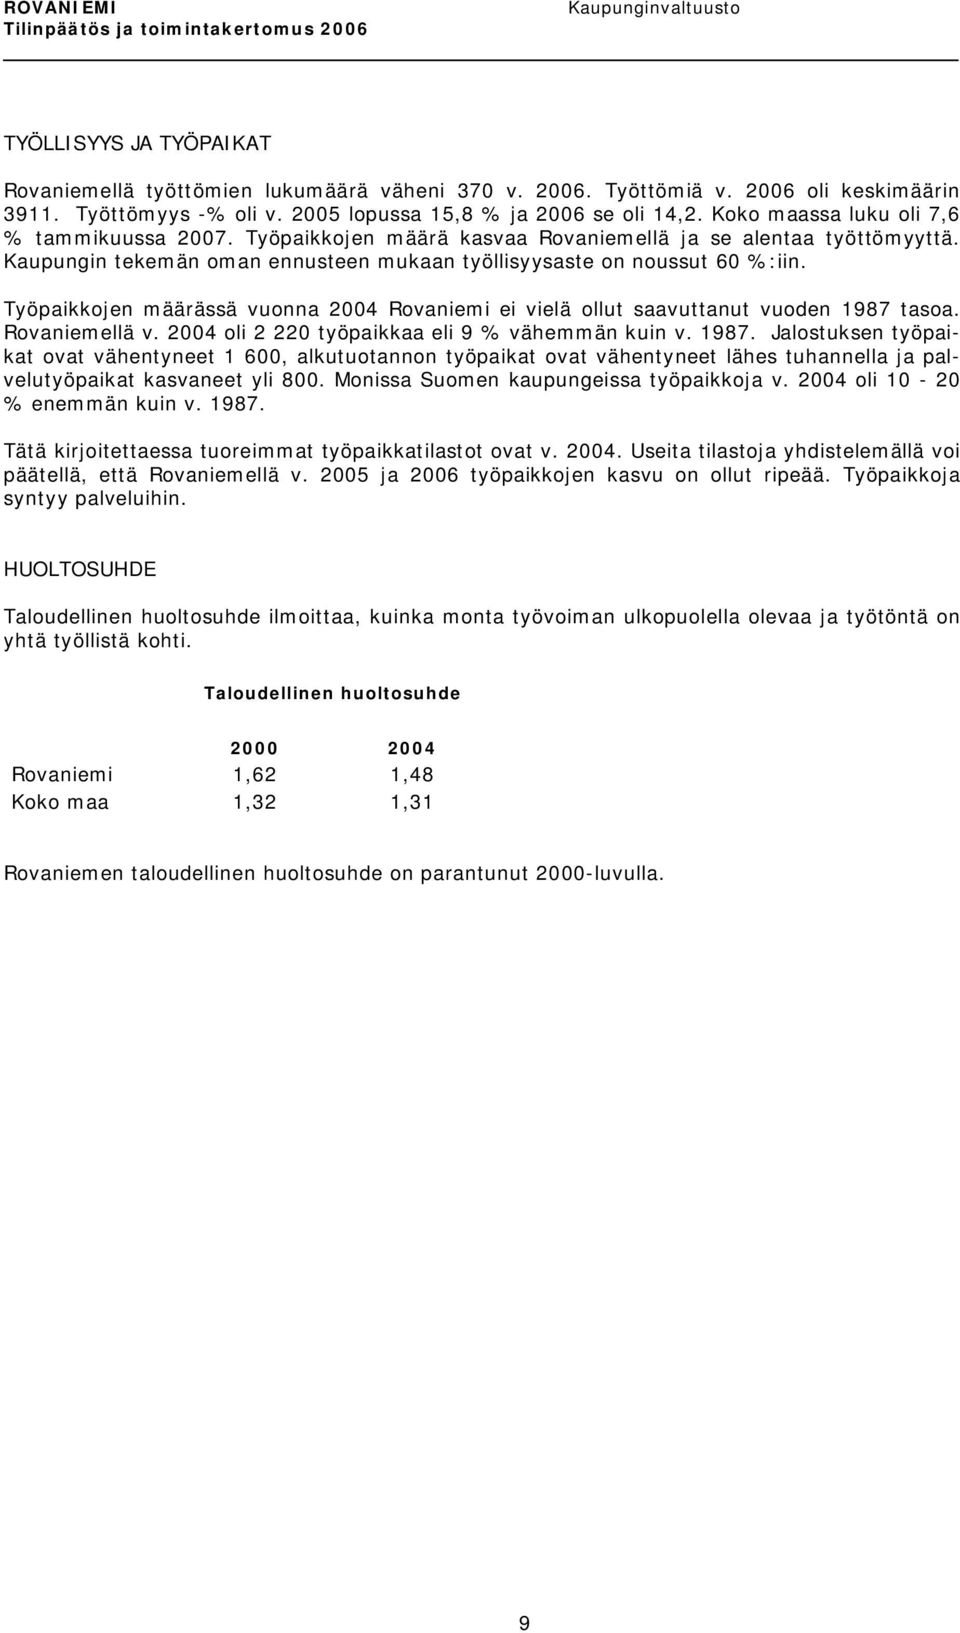 Työpaikkojen määrässä vuonna 2004 Rovaniemi ei vielä ollut saavuttanut vuoden 1987 